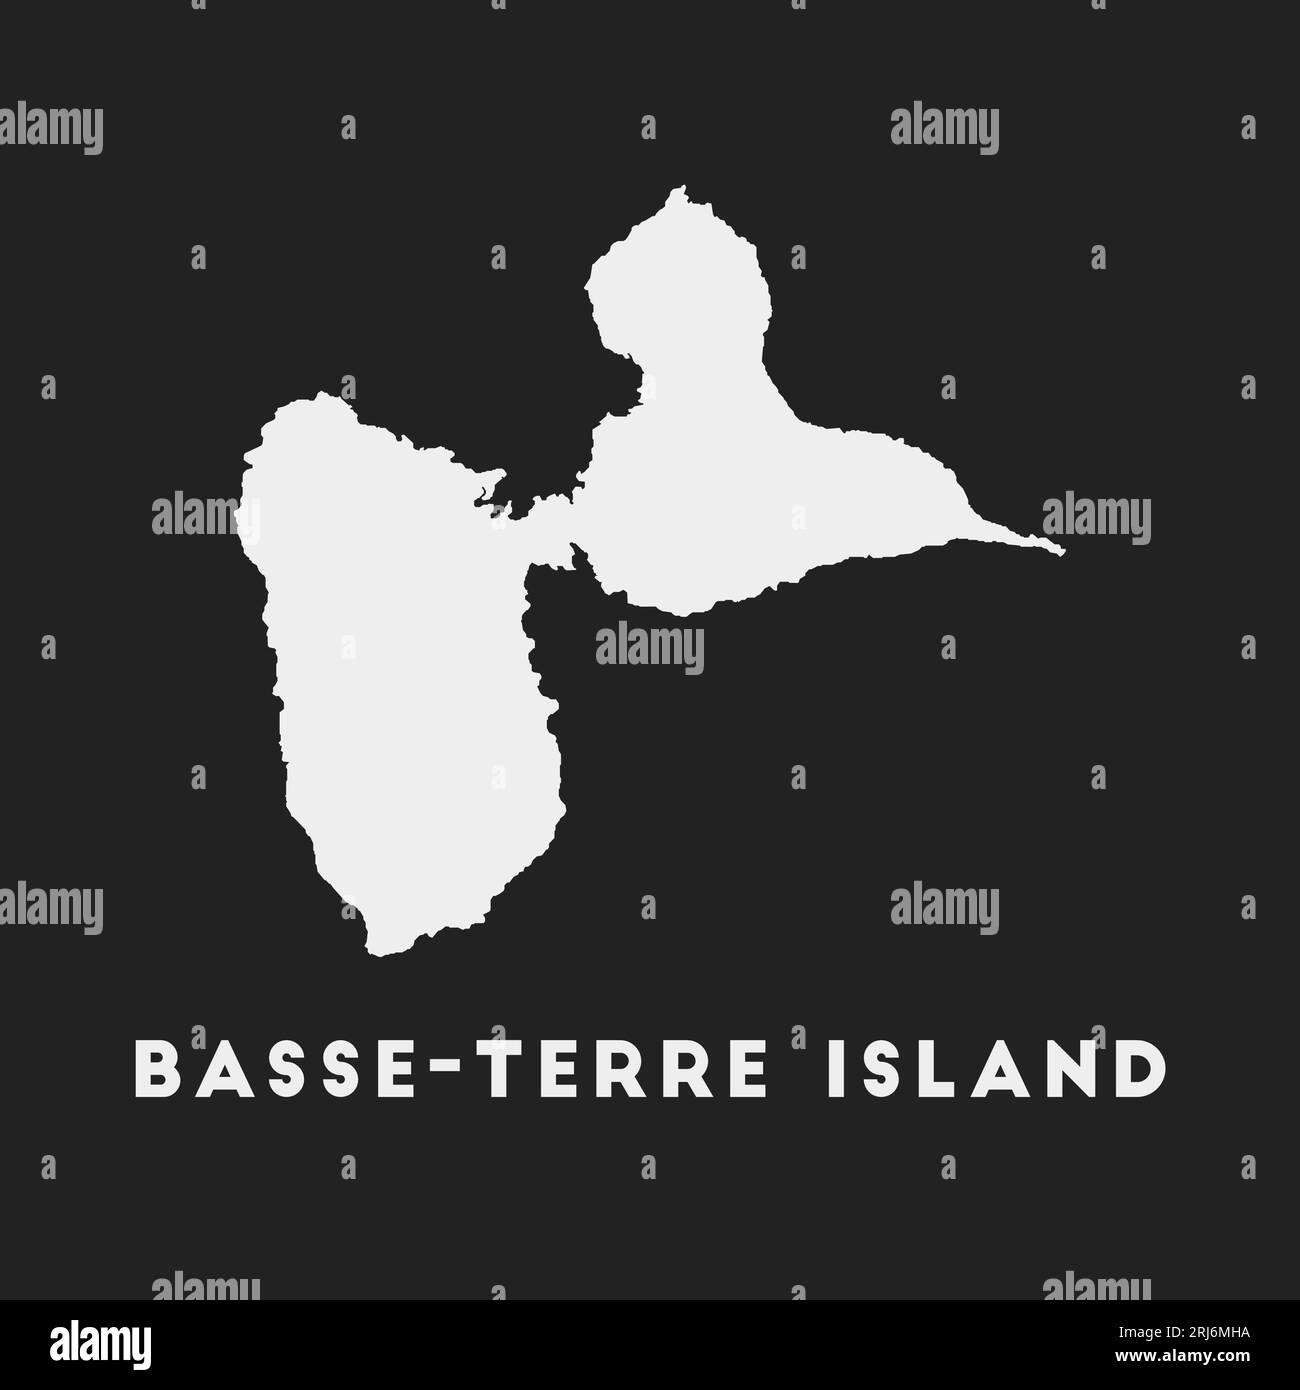 Icône de Basse-Terre Island. Carte sur fond sombre. Carte élégante de l'île de Basse-Terre avec nom. Illustration vectorielle. Illustration de Vecteur